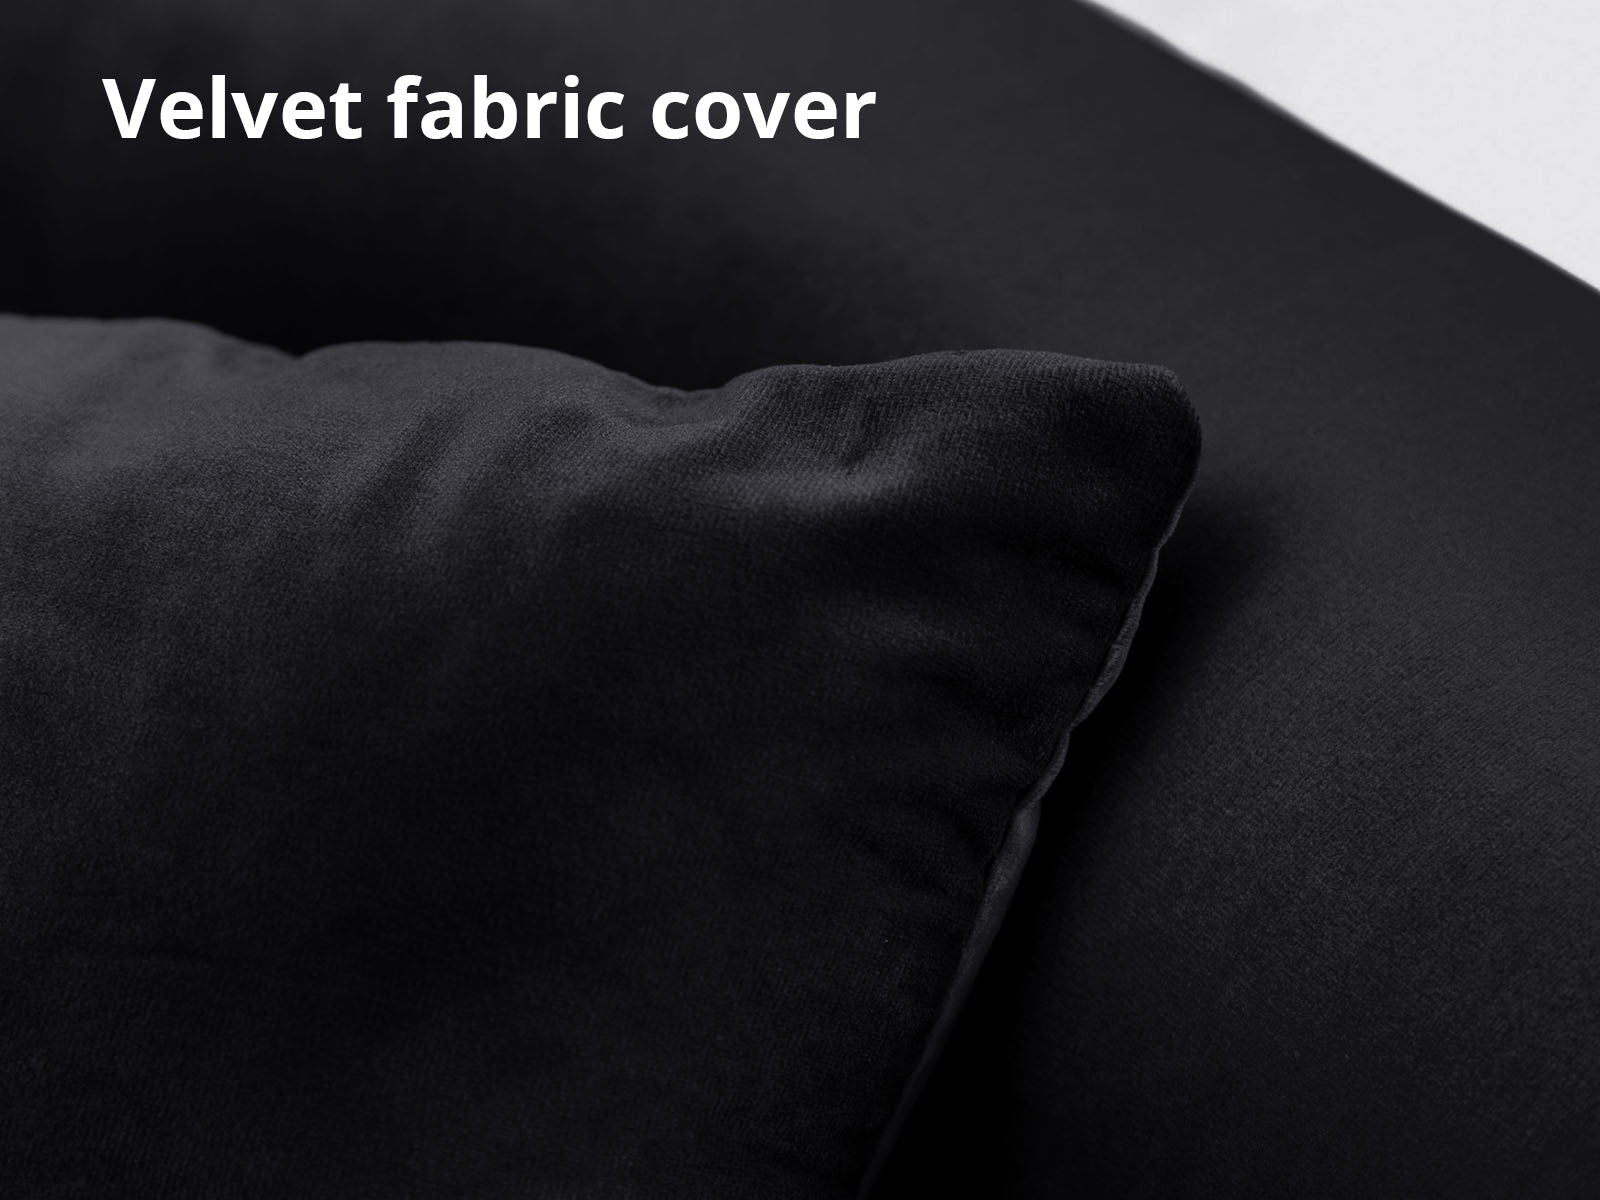 Limpley Sofa Bed Velvet Black